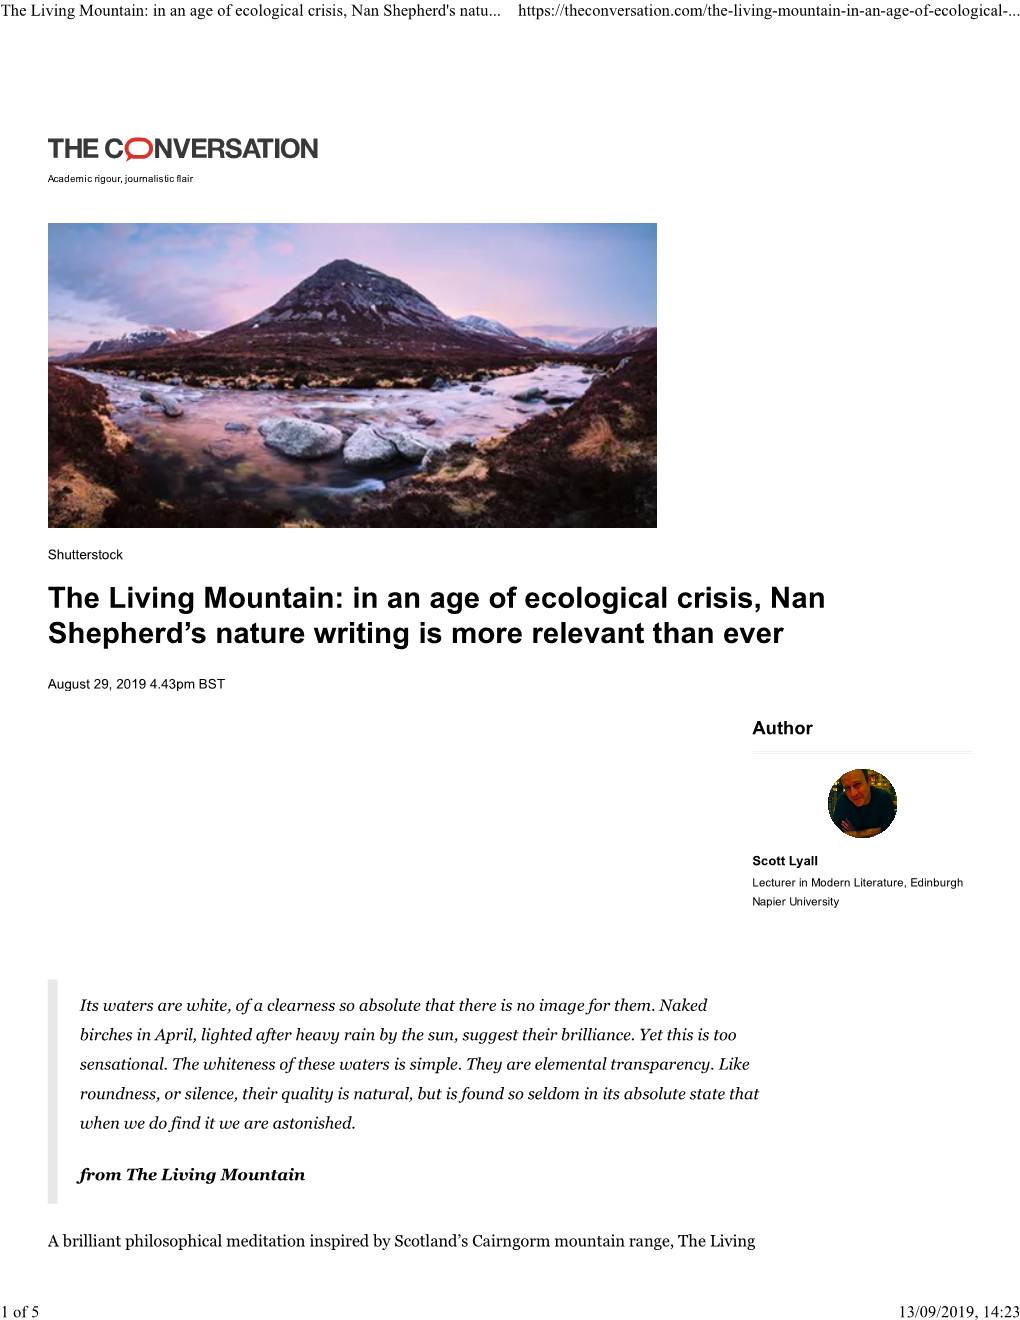 The Living Mountain: in an Age of Ecological Crisis, Nan Shepherd's Natu